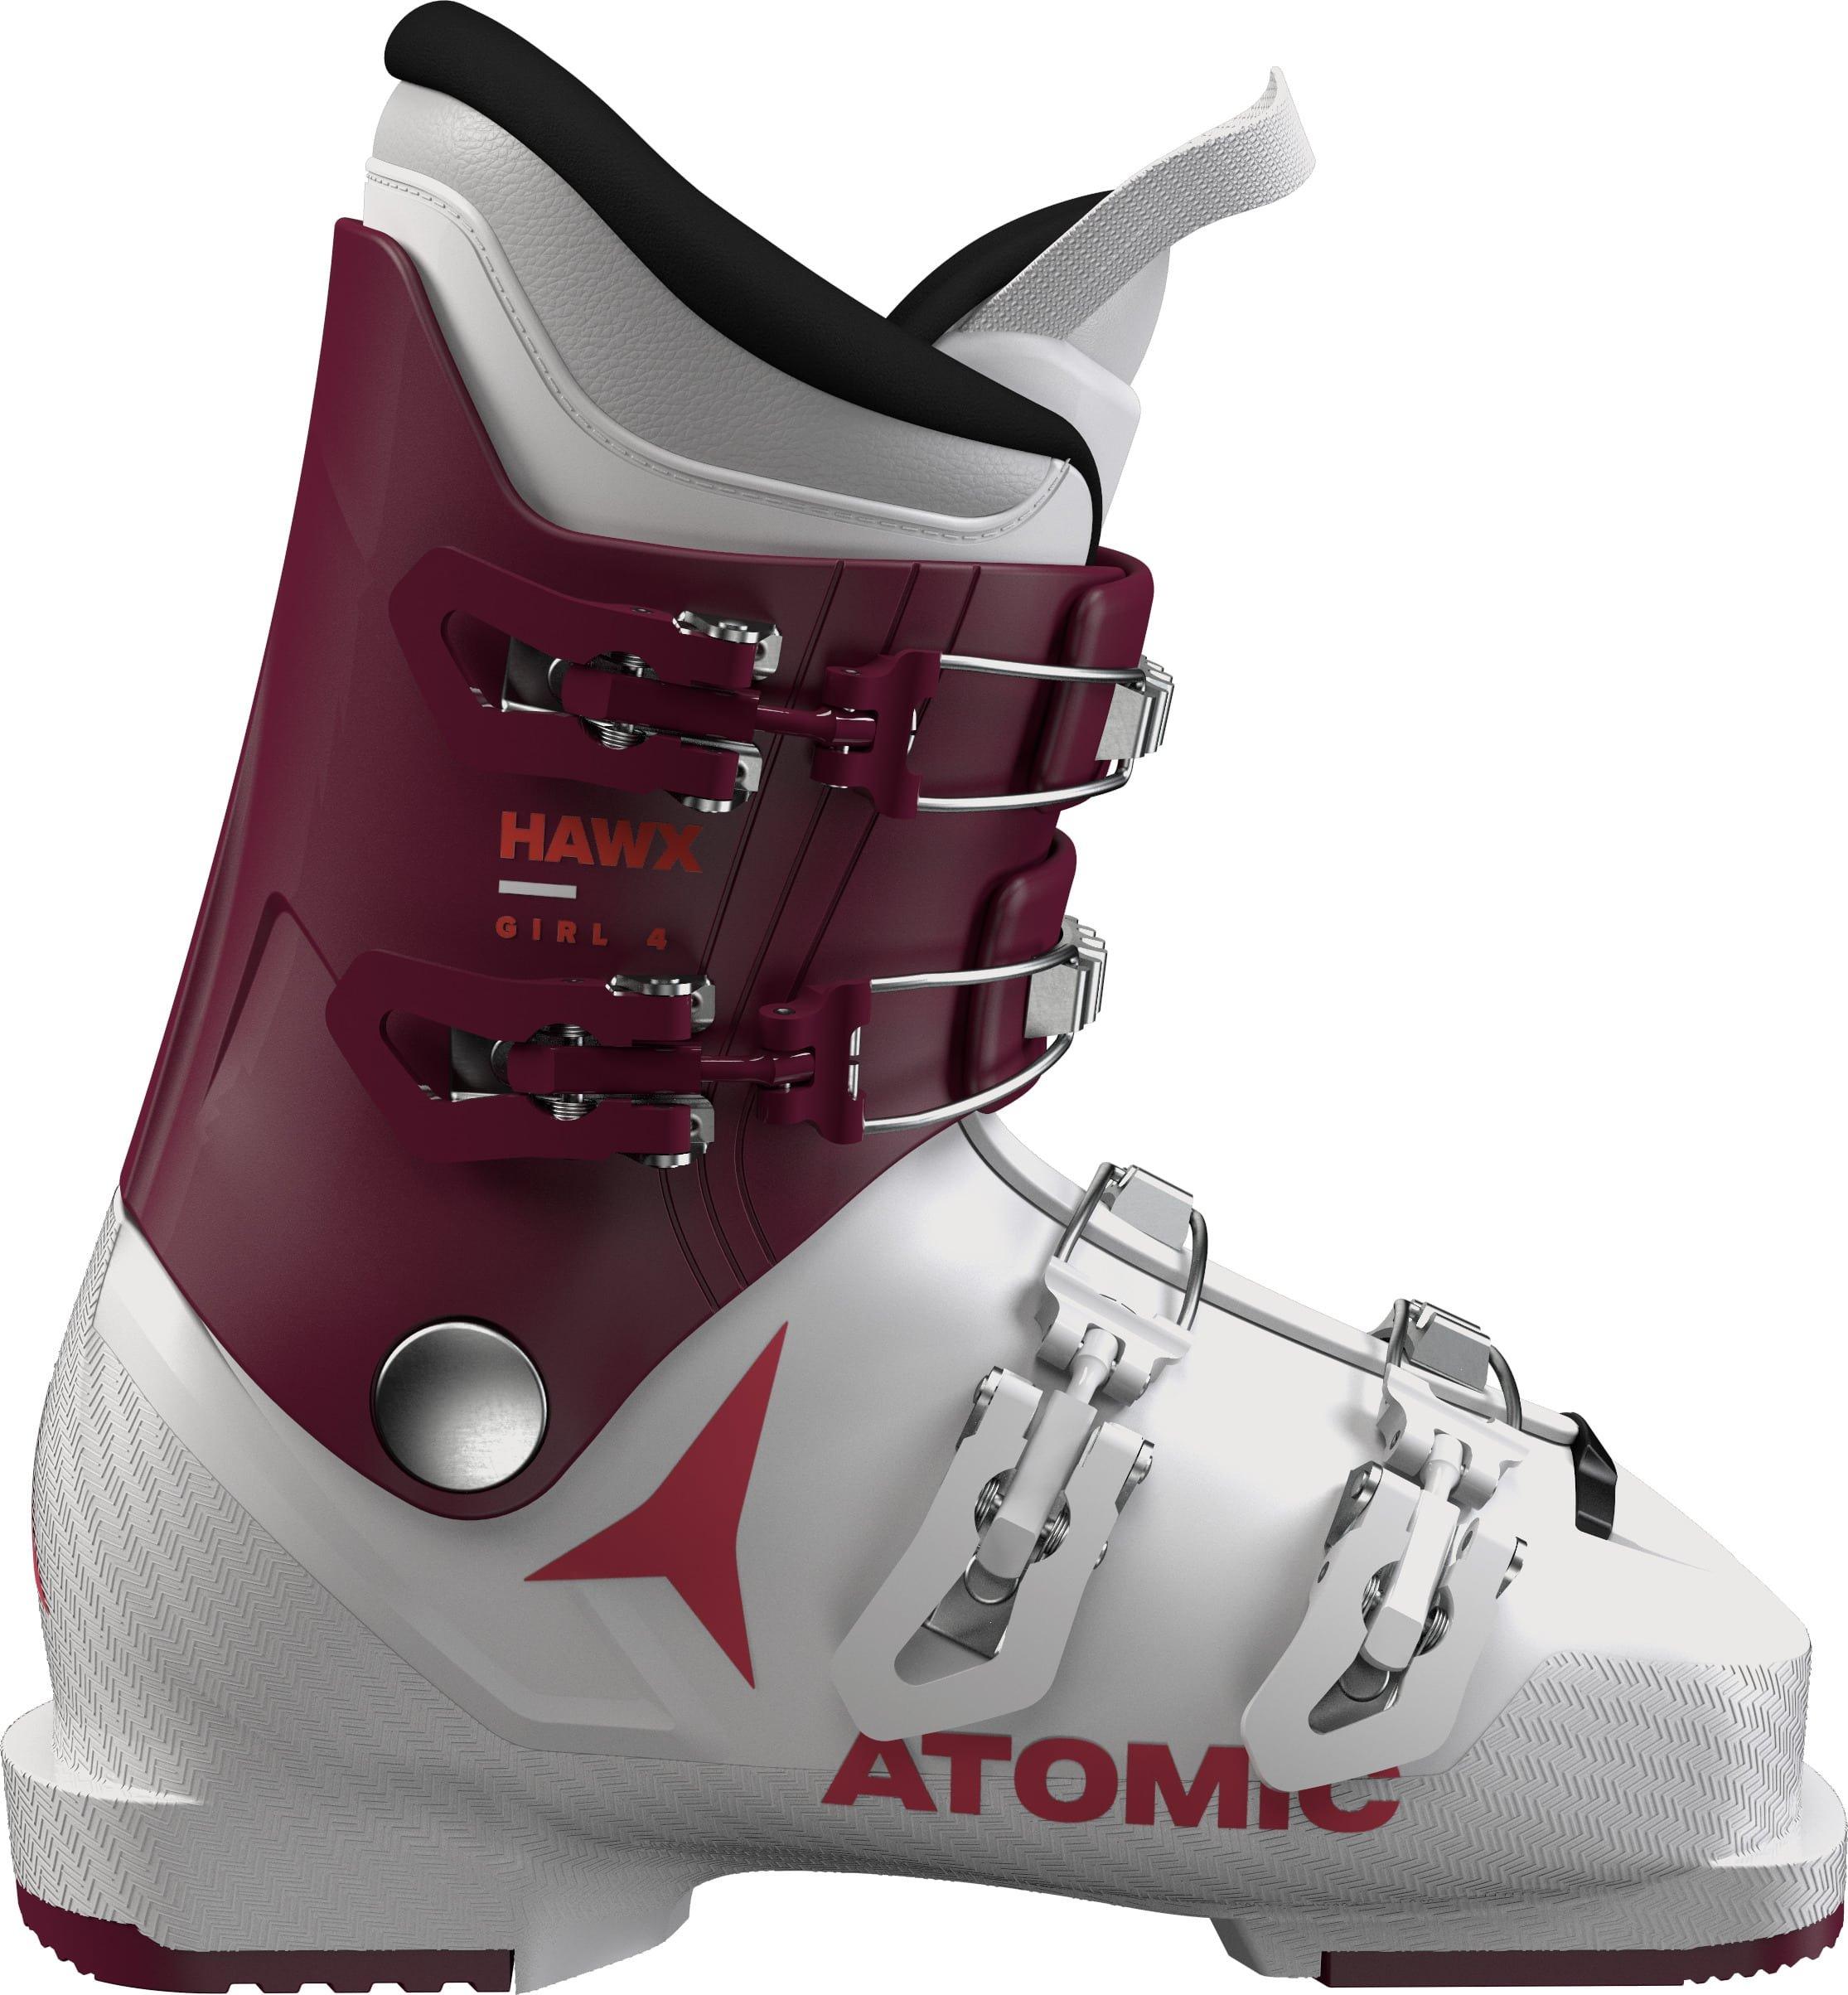 Detské lyžiarky Atomic Hawx Girl 4 Veľkosť: 24 cm